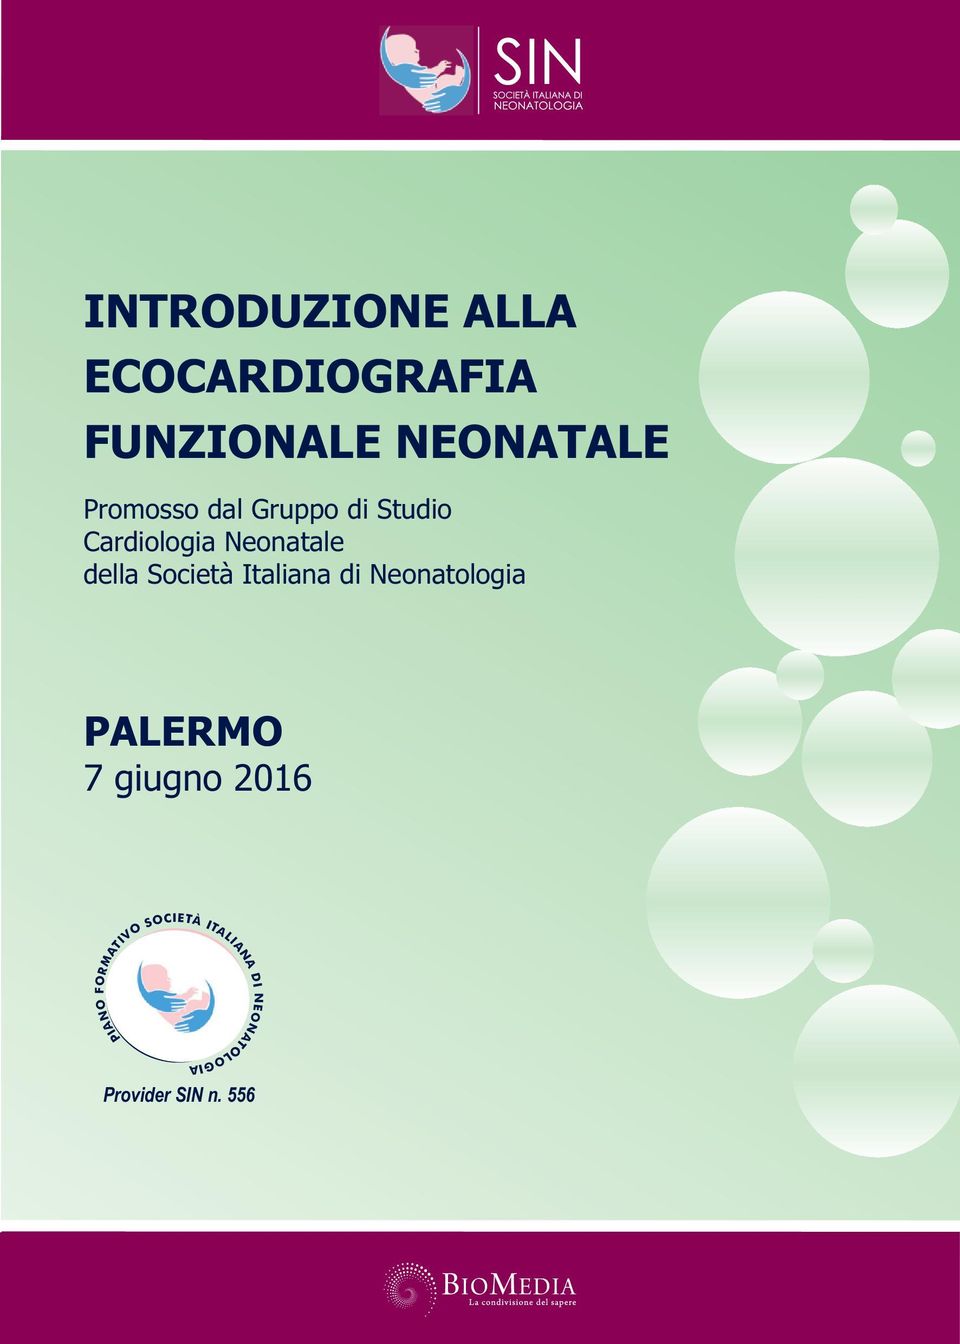 Società Italiana di Neonatologia PALERMO 7 giugno 2016